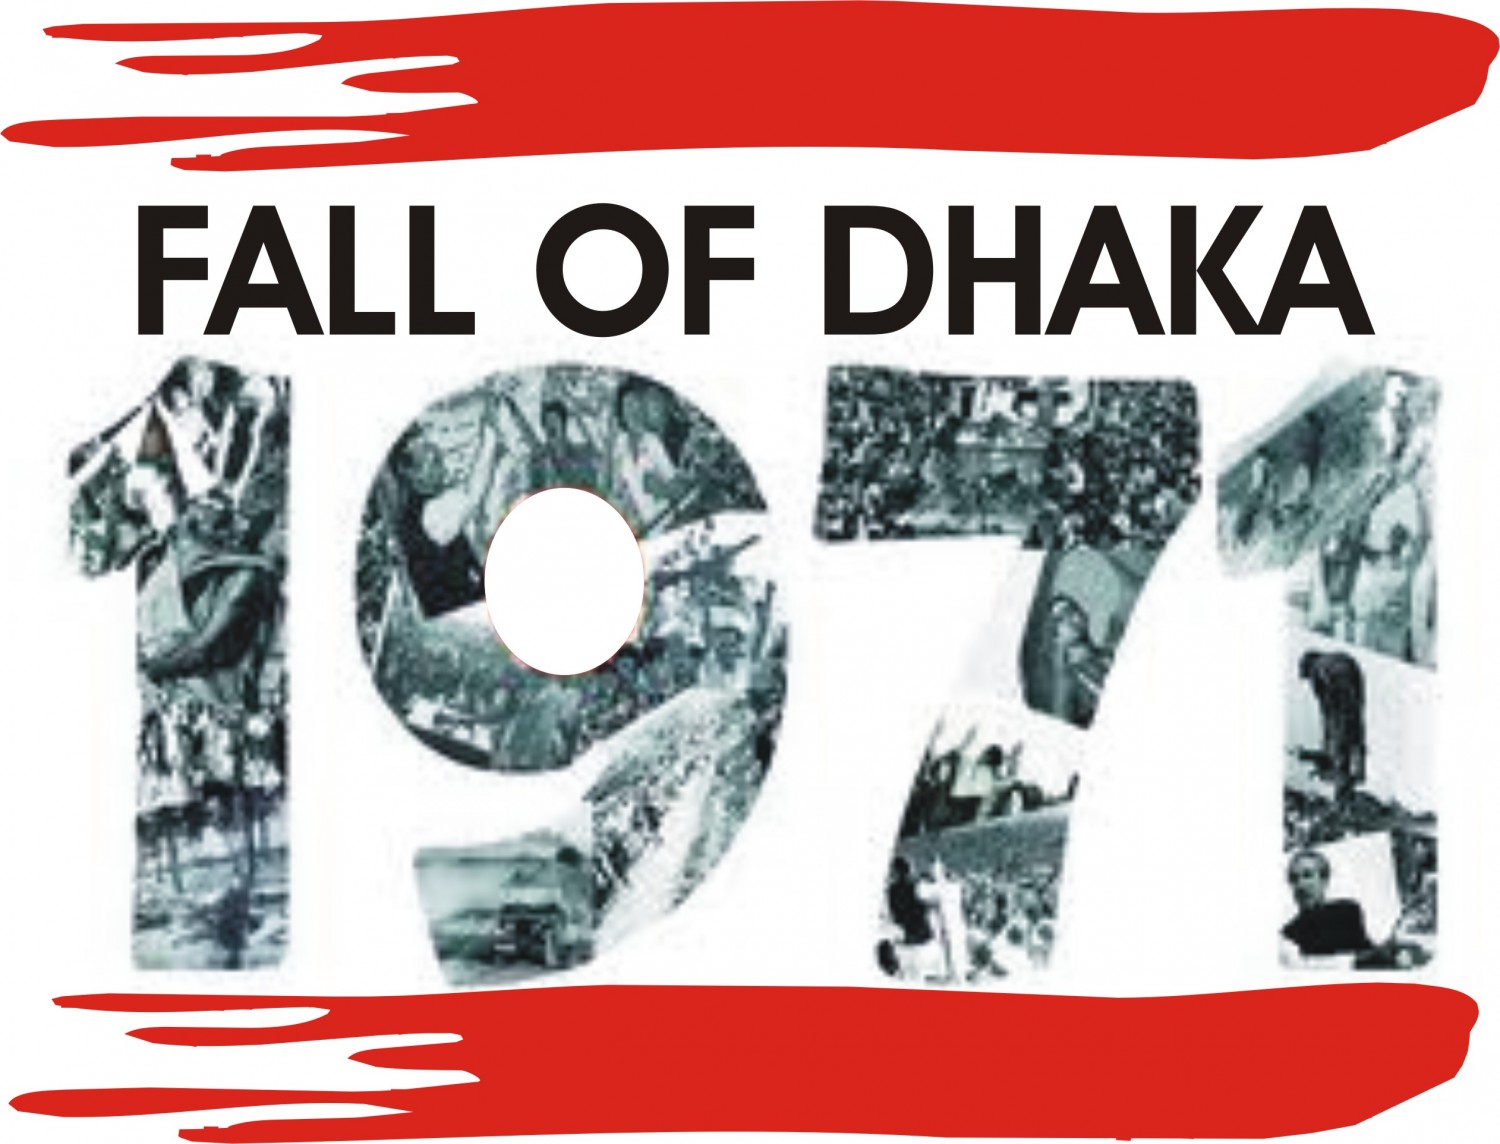 Fall of dhaka